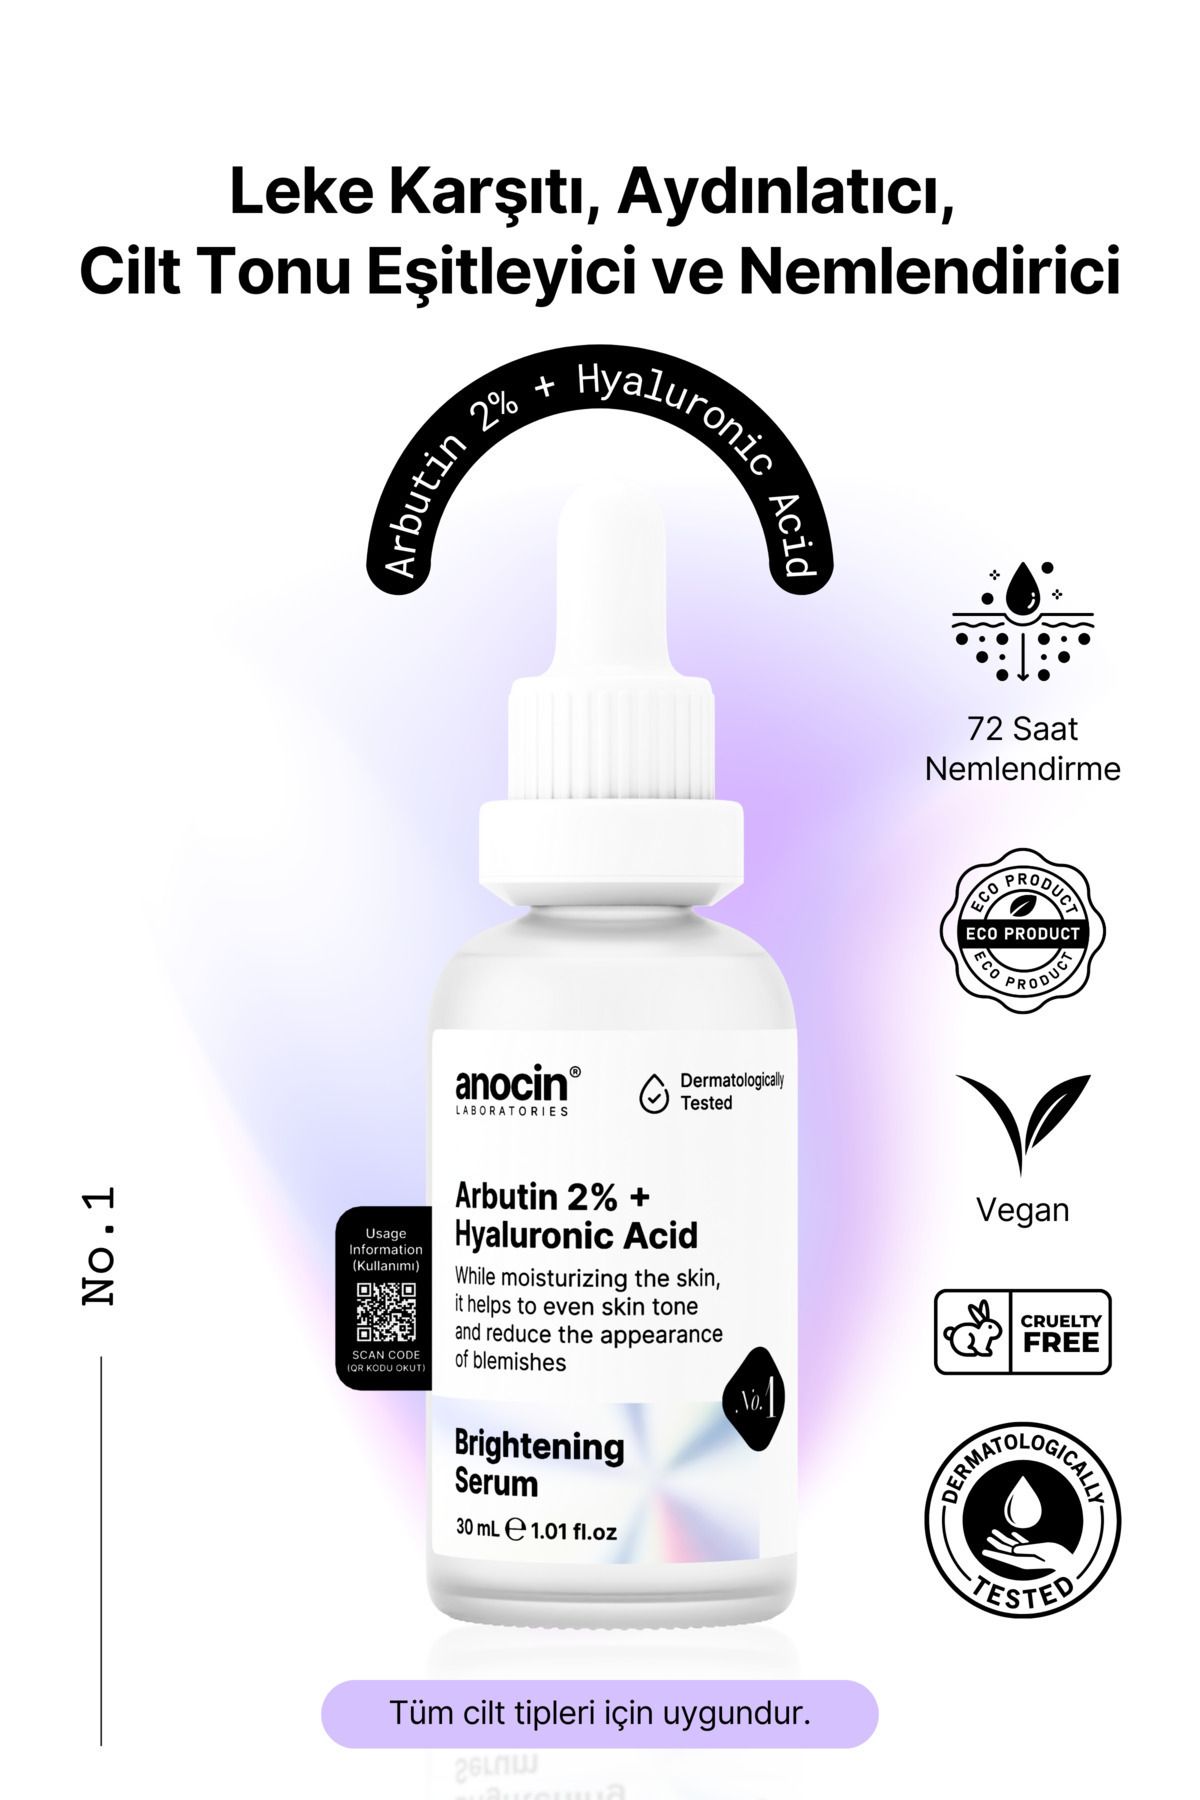 anocin Arbutin %2+ Hyaluronic acid Leke karşıtı, Aydınlatıcı, Cilt ton eşitleyici, Nemlendirici serum No:1